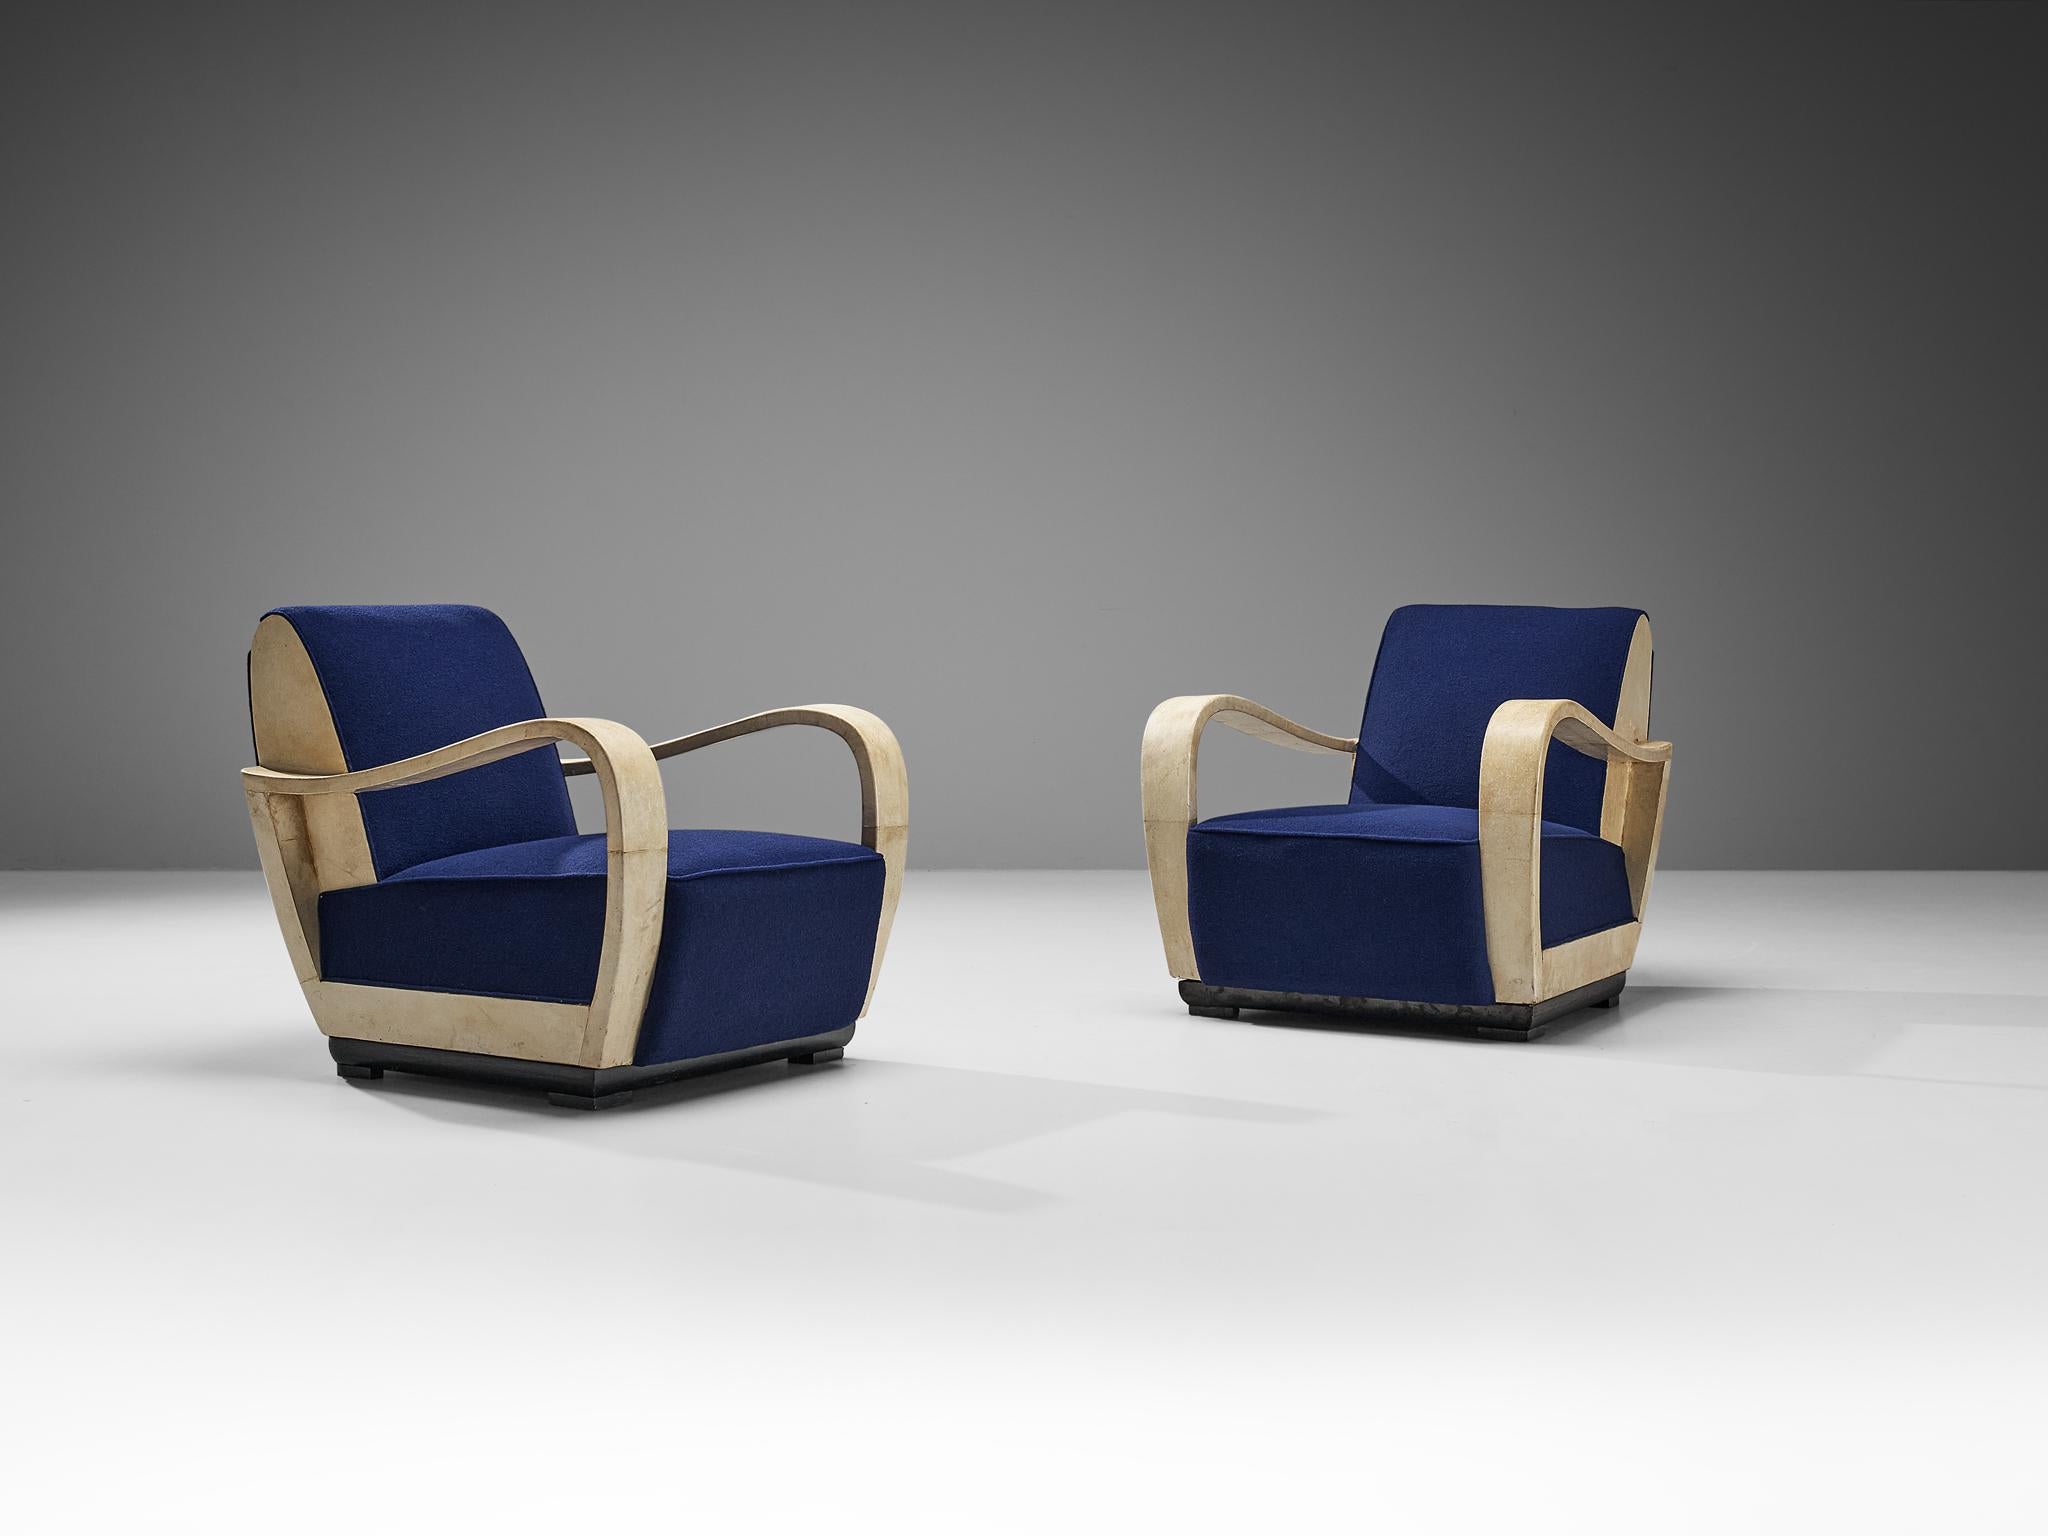 Valzania, paire de chaises longues, parchemin, tissu, bois laqué, Italie, vers 1940

Cette exquise paire de fauteuils a été fabriquée par Valzania vers 1940. Cette chaise est une pièce unique, tant par son design que par l'utilisation des matériaux.